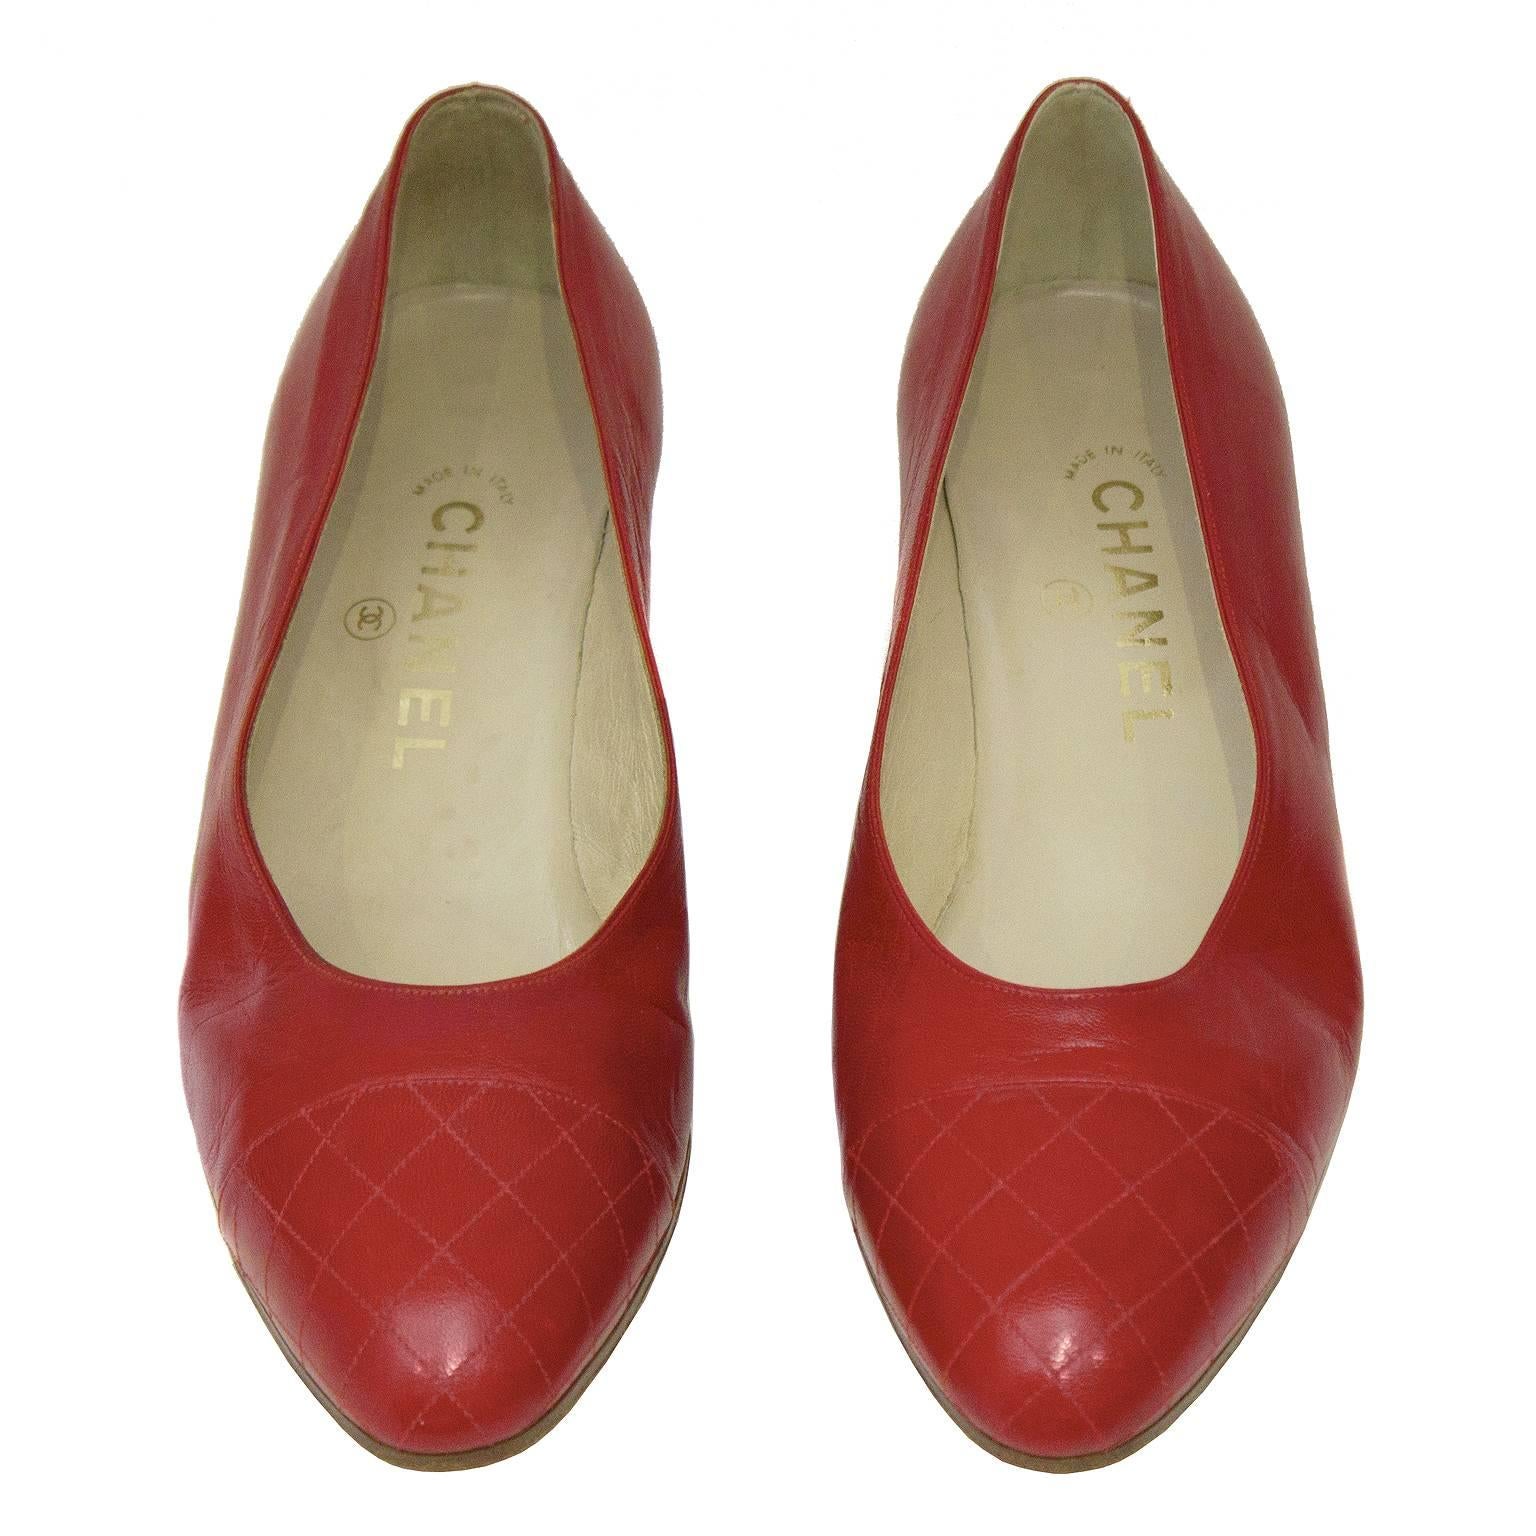 Escarpin Chanel des années 1980 en cuir rouge avec un détail matelassé sur le bout en amande. Talons plats effilés recouverts de cuir. Les chaussures sont dans un état impeccable, jamais portées. Marqué 6½ mais s'adapte comme un 5 ½ / 6 US.